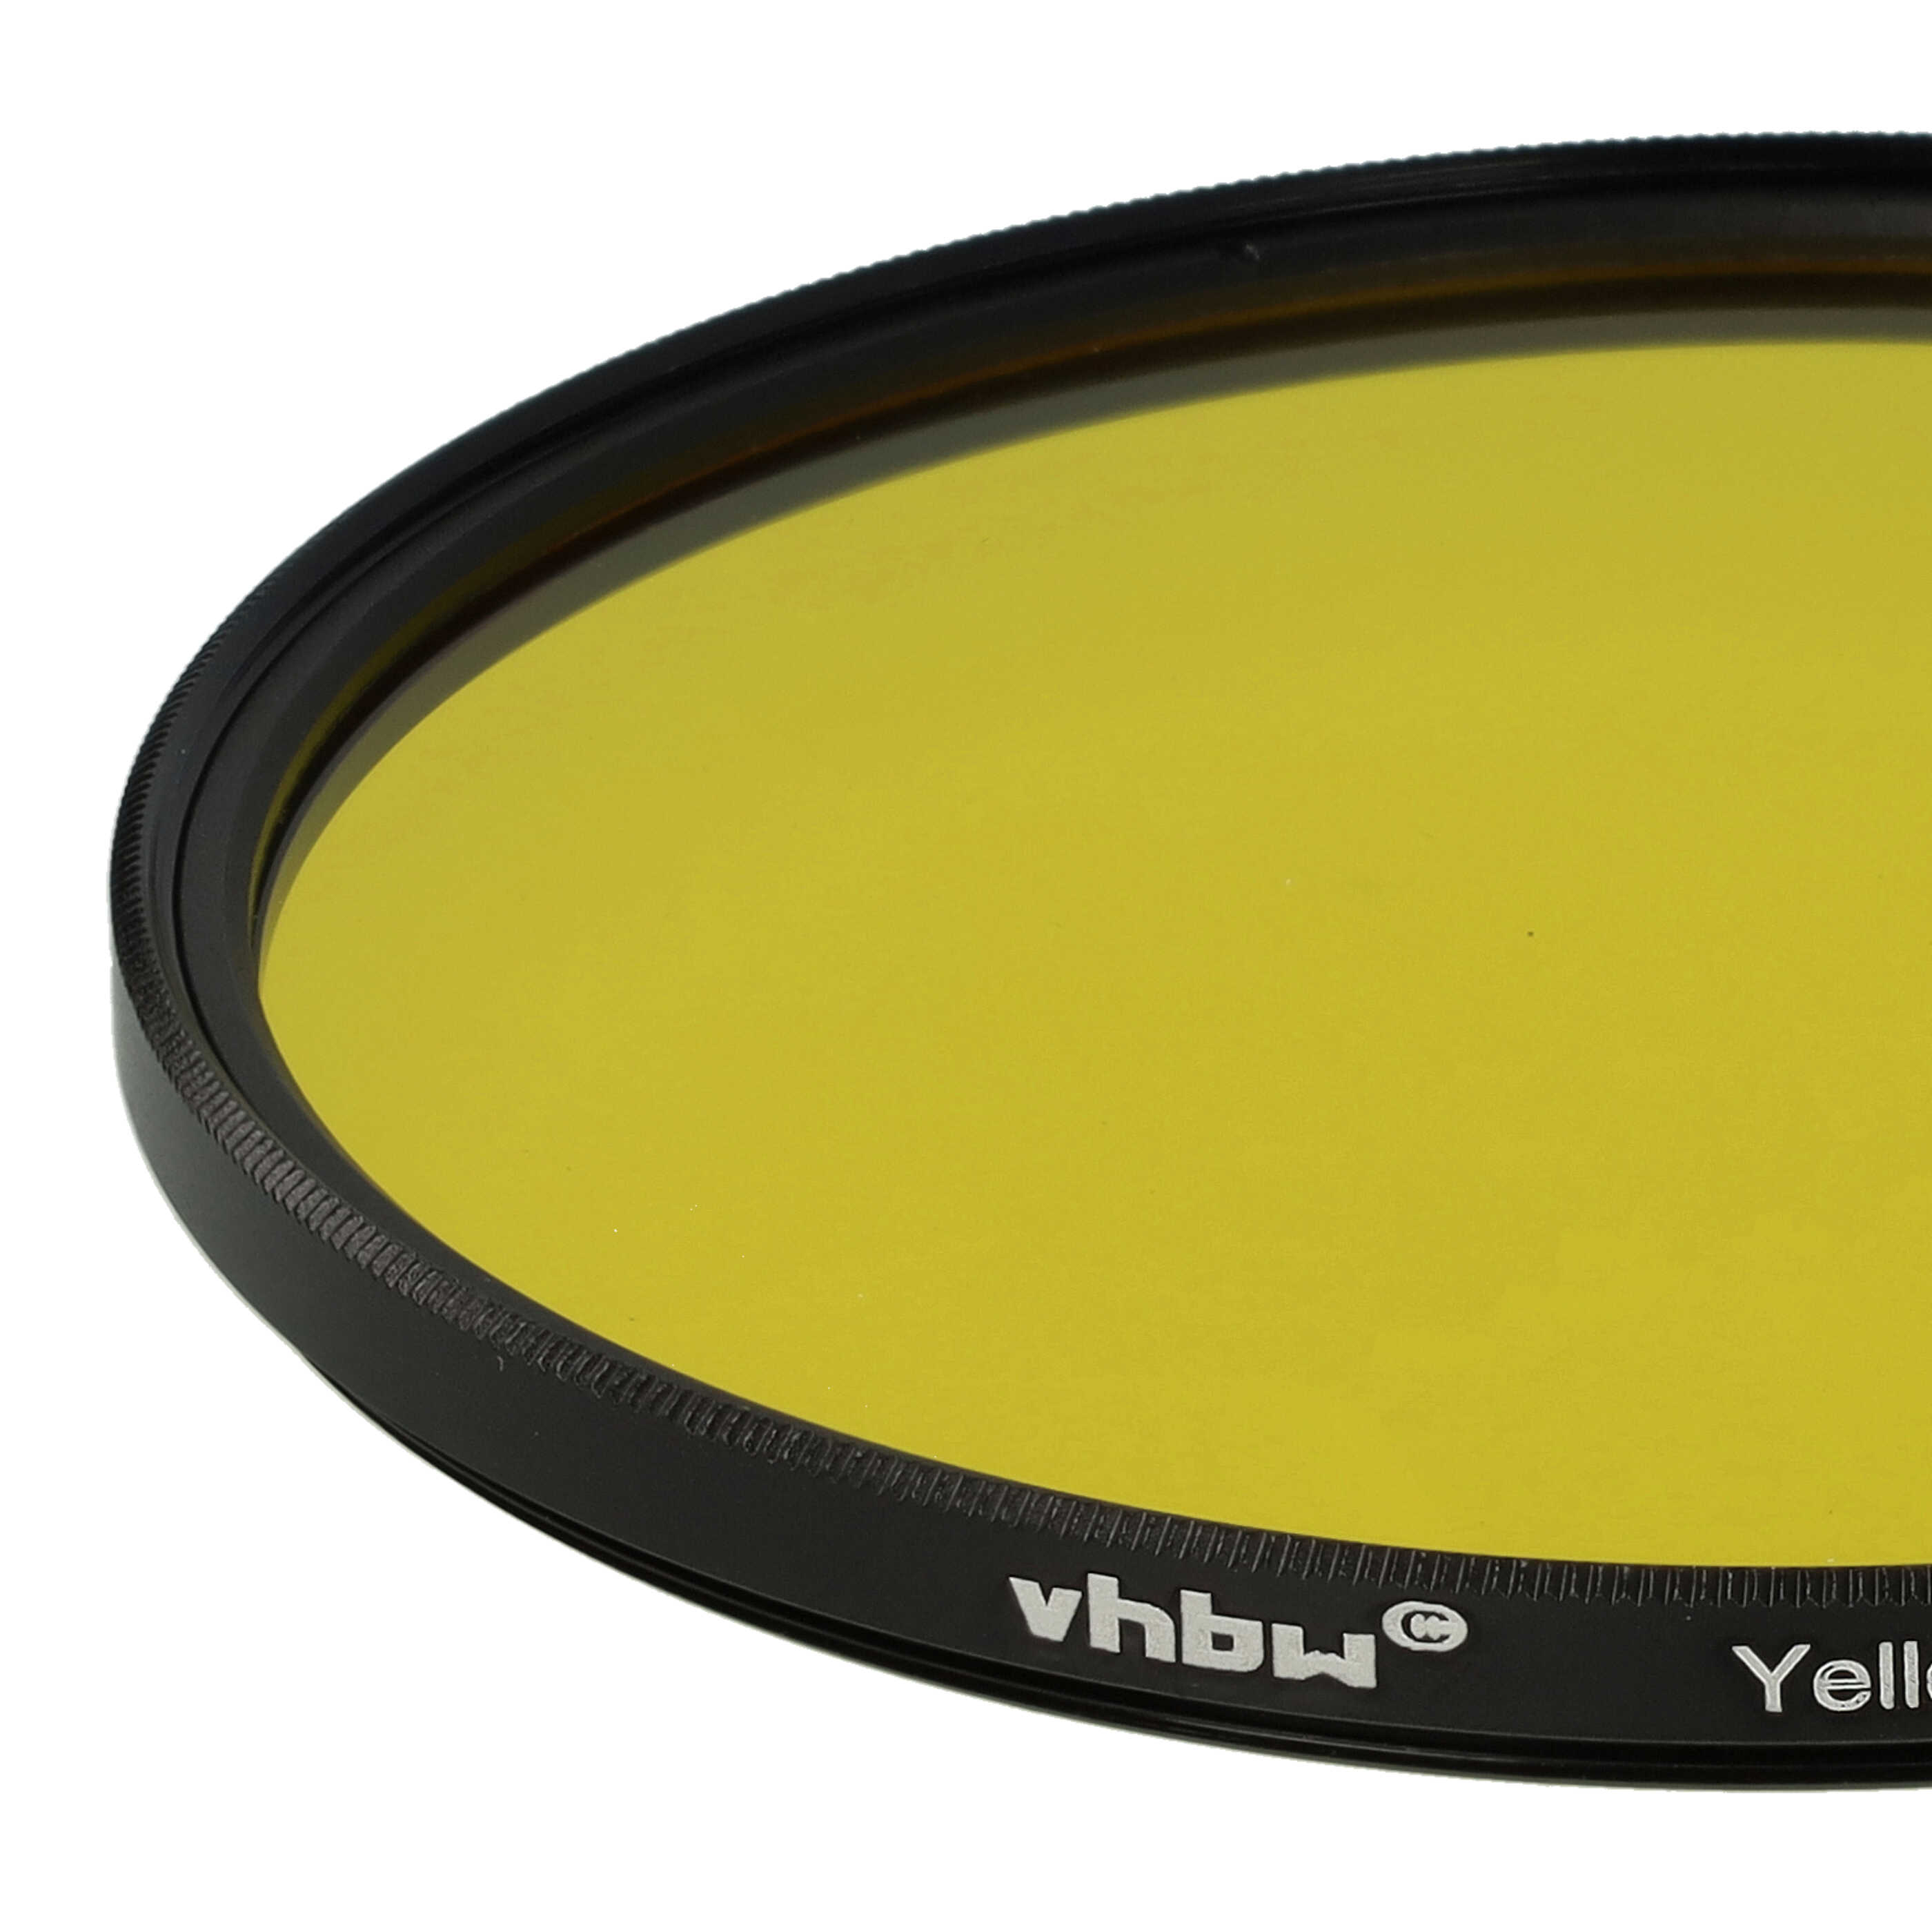 Filtro colorato per obiettivi fotocamera con filettatura da 82 mm - filtro giallo